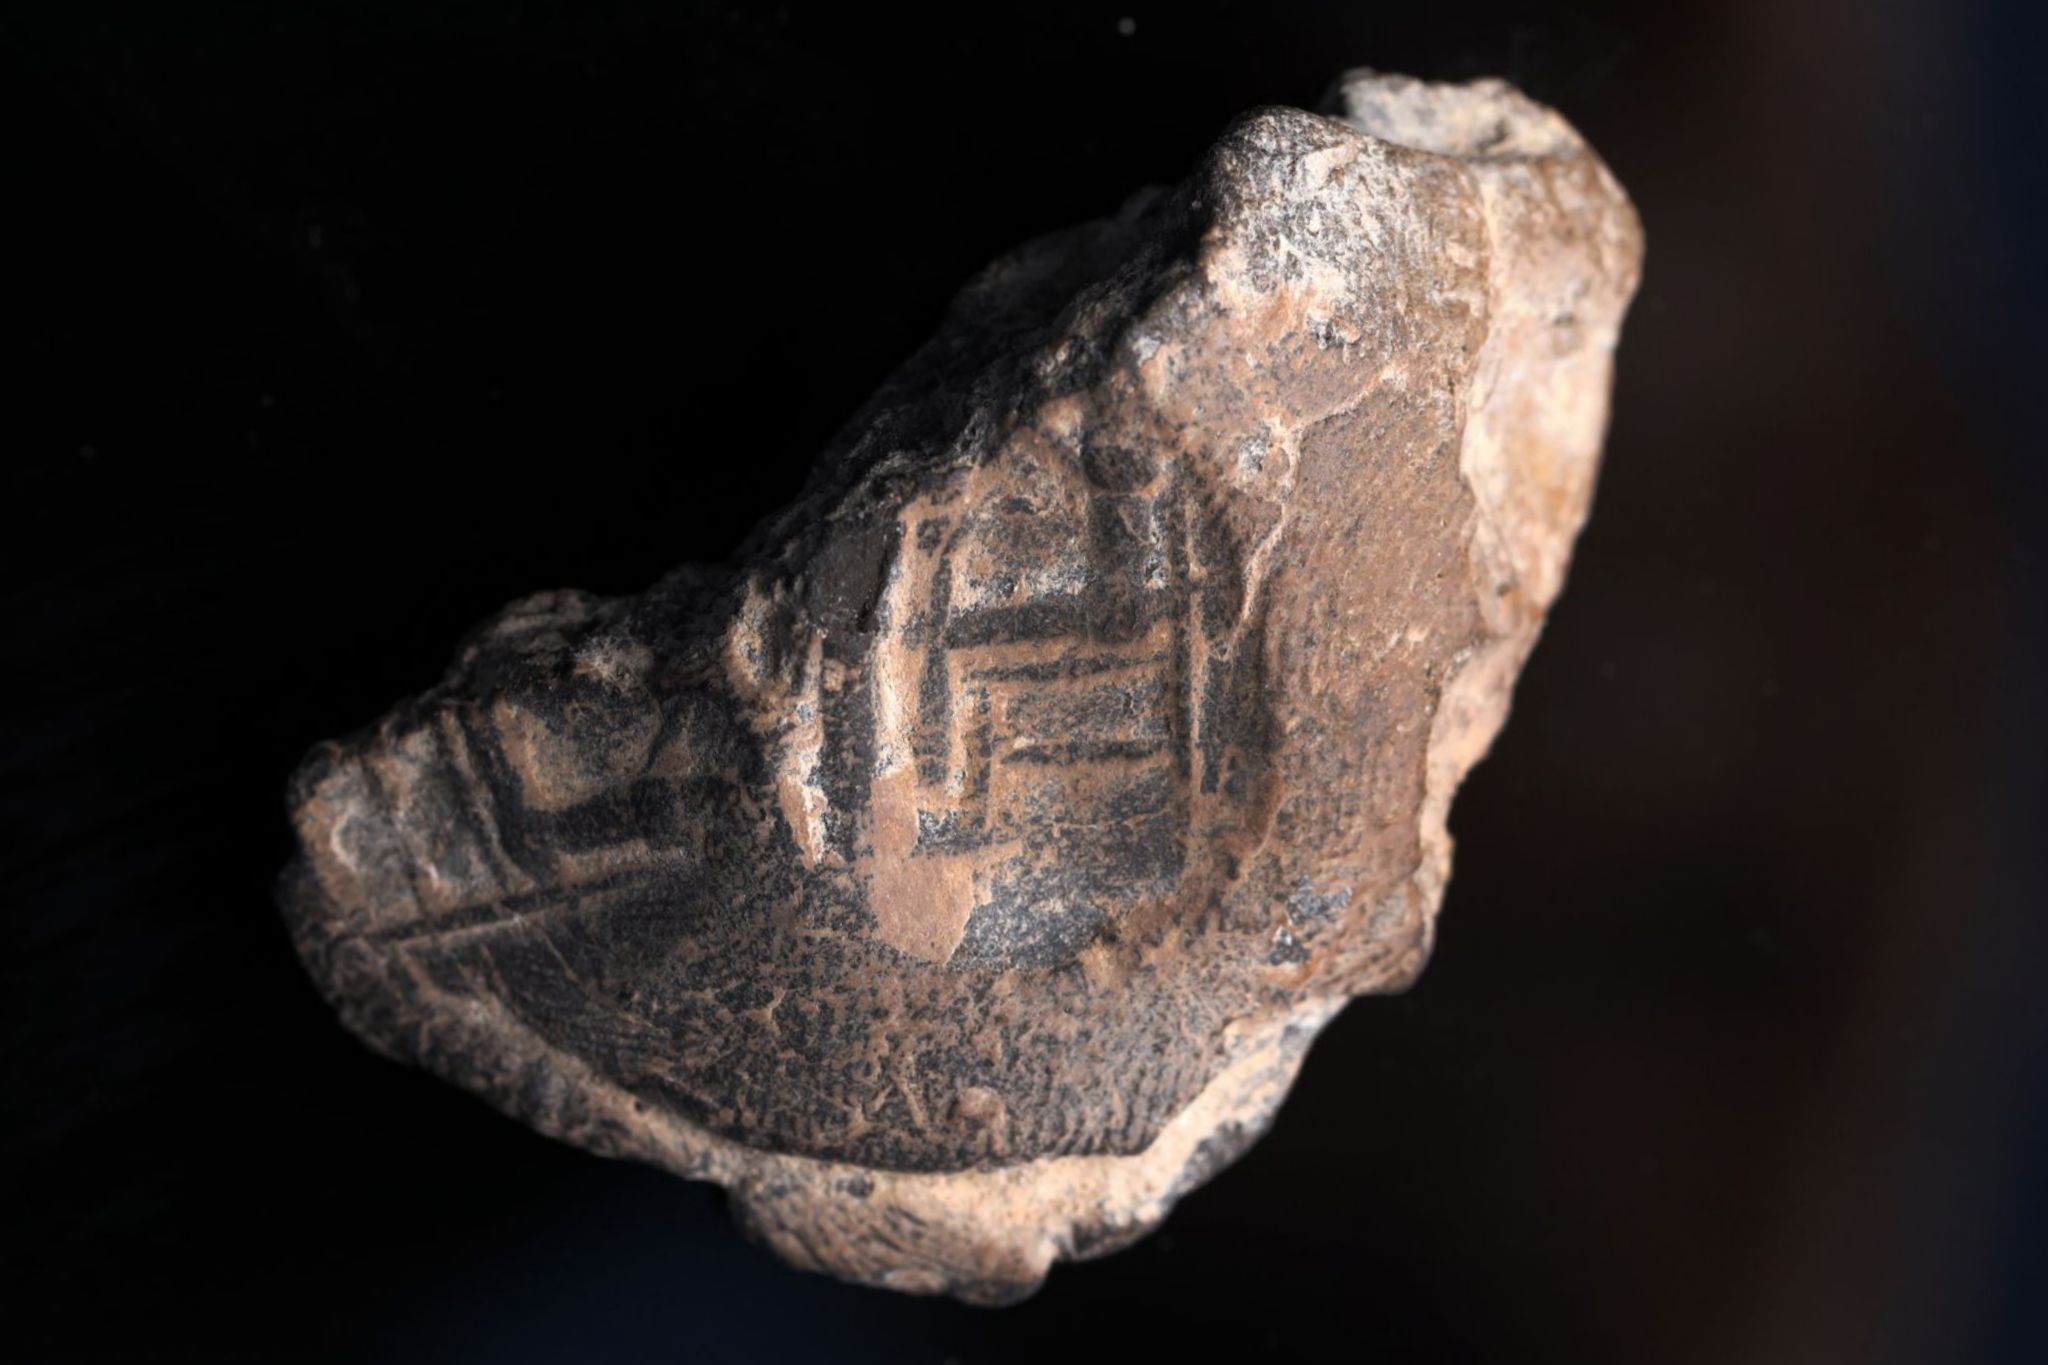 טביעת חותם שעליה הטביעה מופיעה דמות של אדם היושב על כיסא גדול (ככל הנראה מלך). צילום: אליהו ינאי